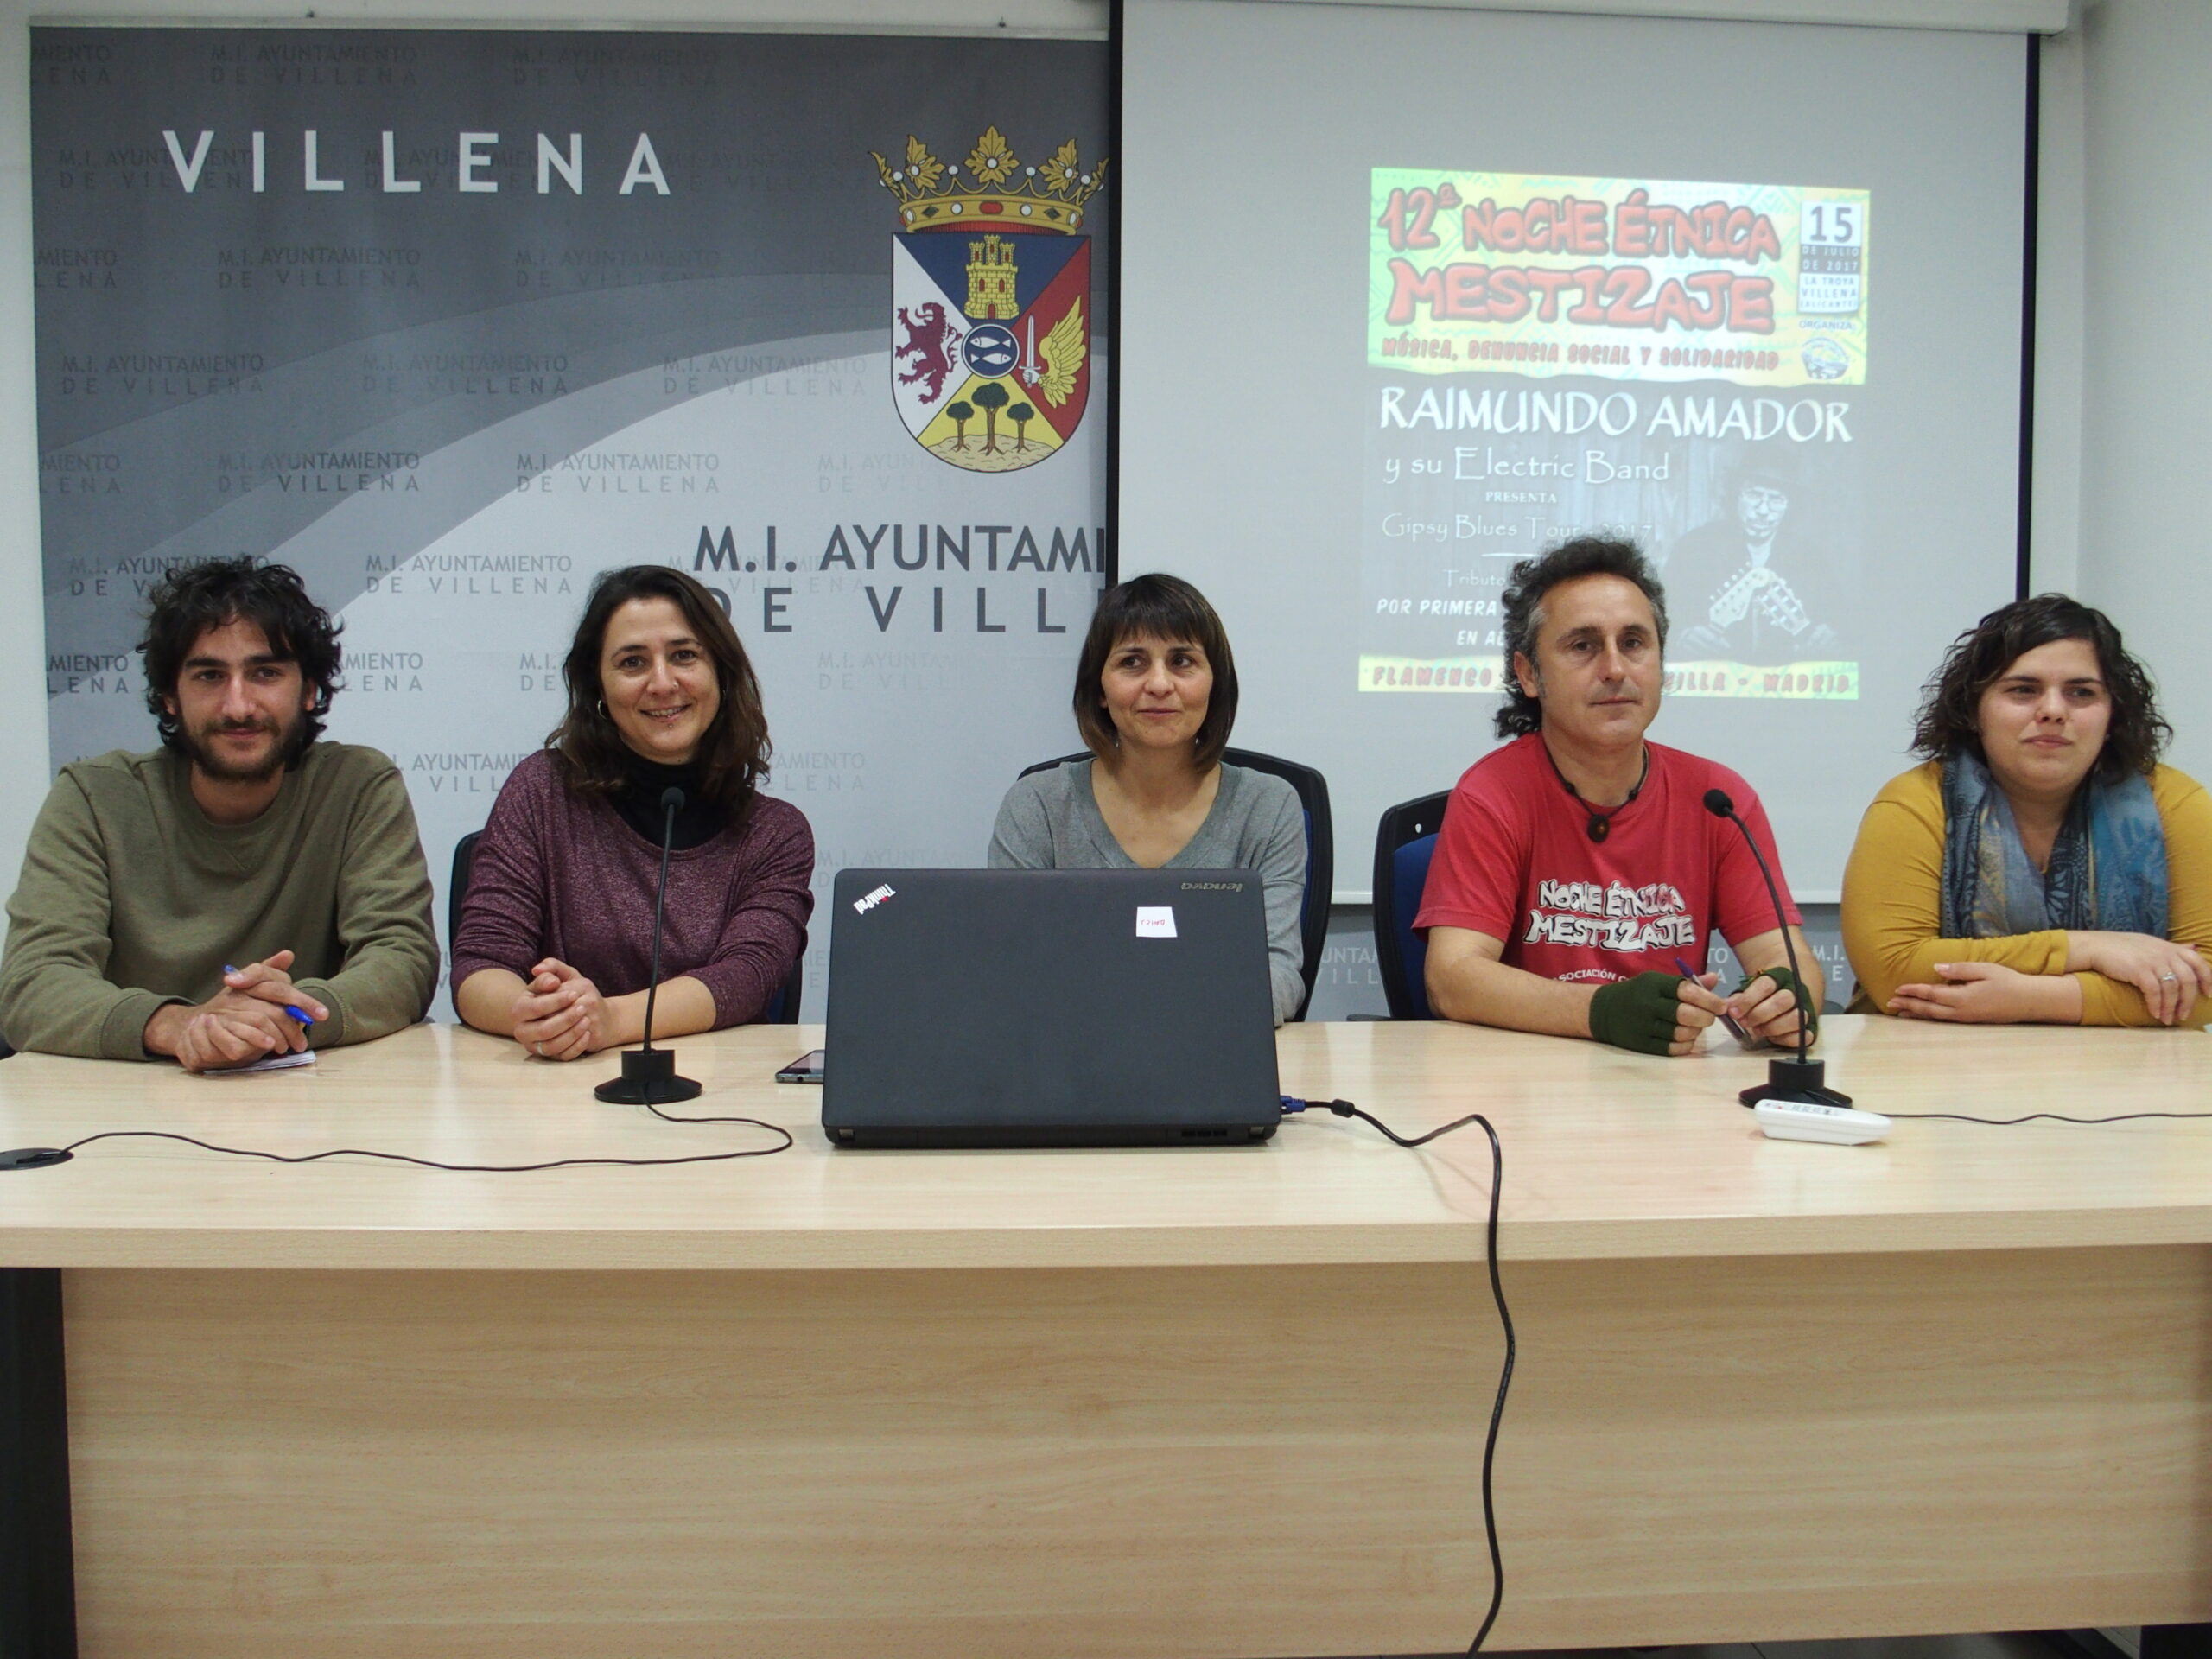 Raimundo Amador encabeza el cartel de la XII Noche  Étnica Mestizaje Somos Anti Xenofobia de Villena